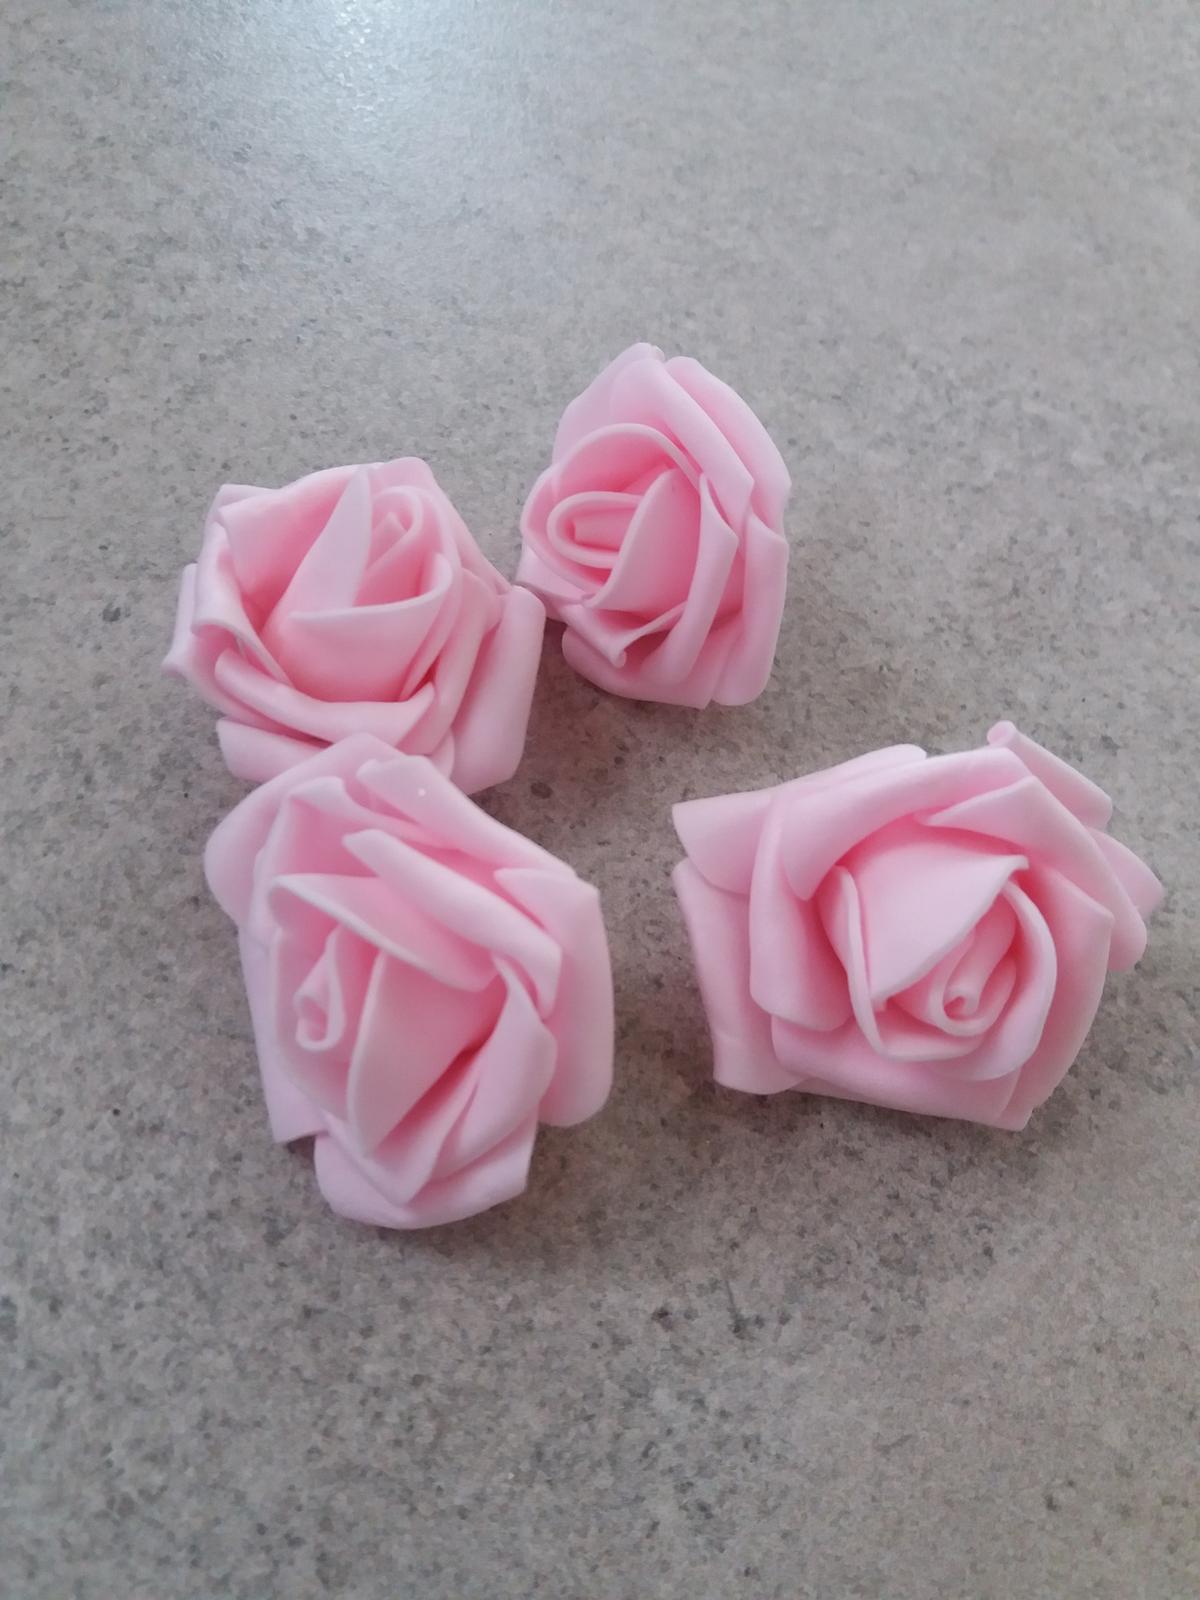 Pěnové růže 4 cm růžové  balení po 10 ks - Obrázek č. 1